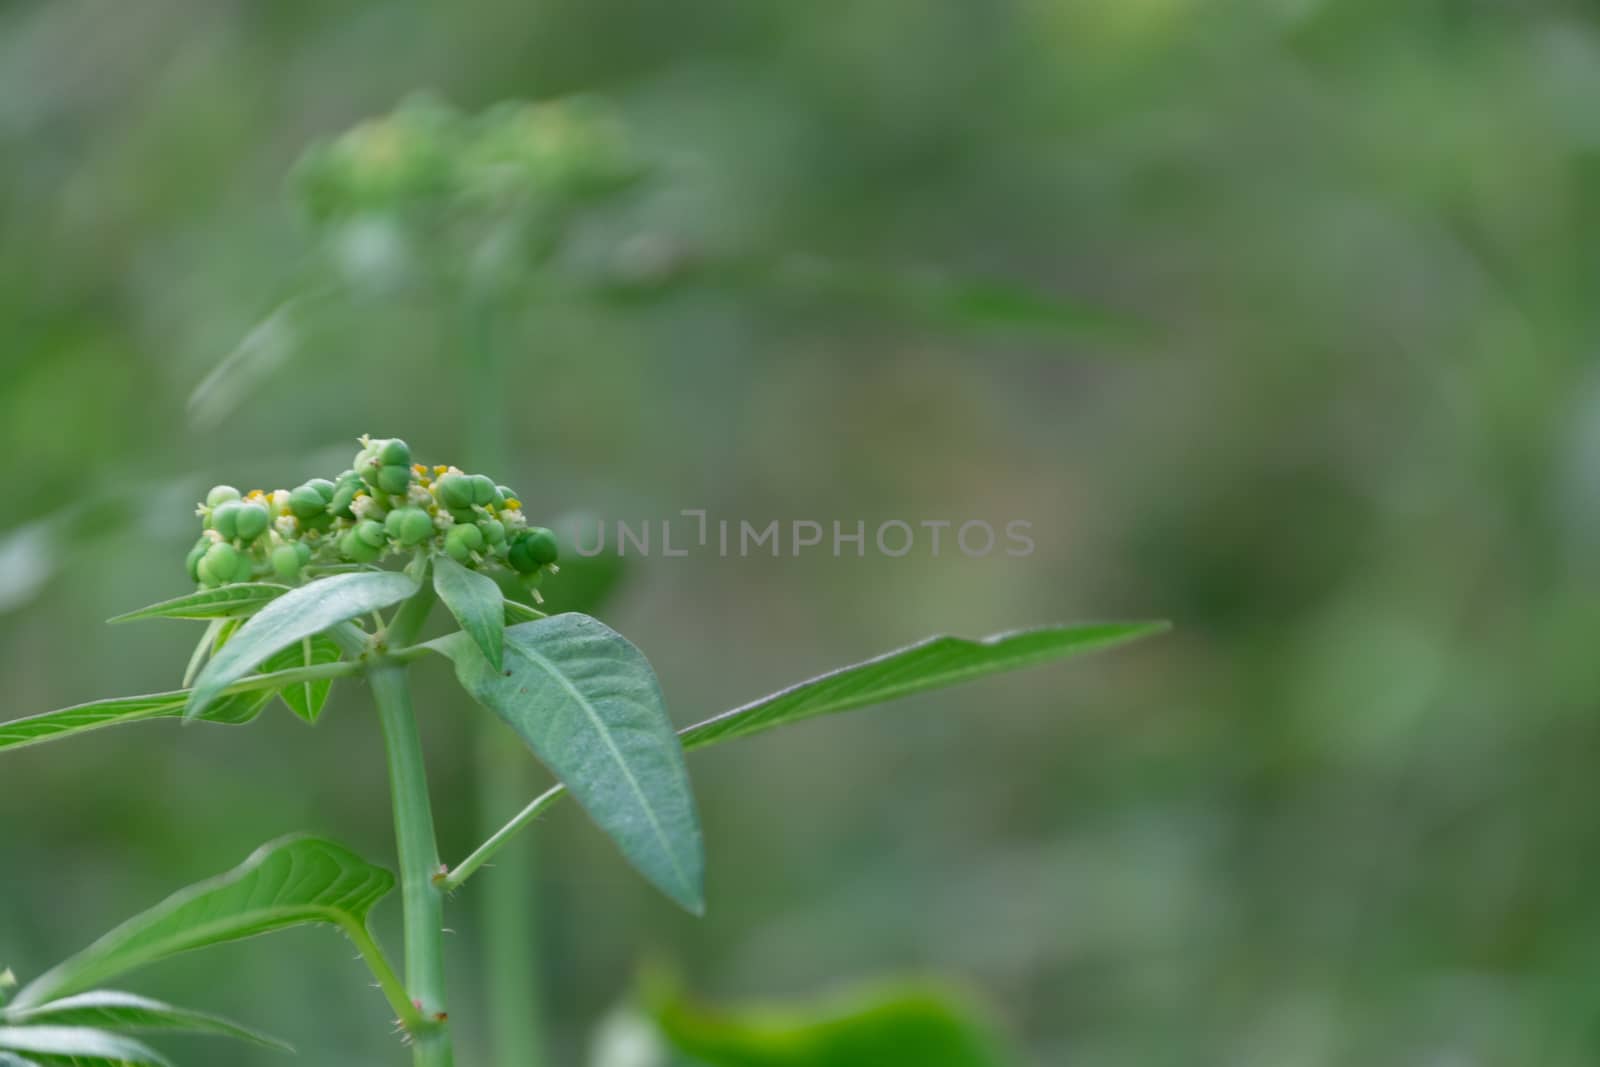 Euphorbia heterophylla grass flower in nature garden  by Banglade